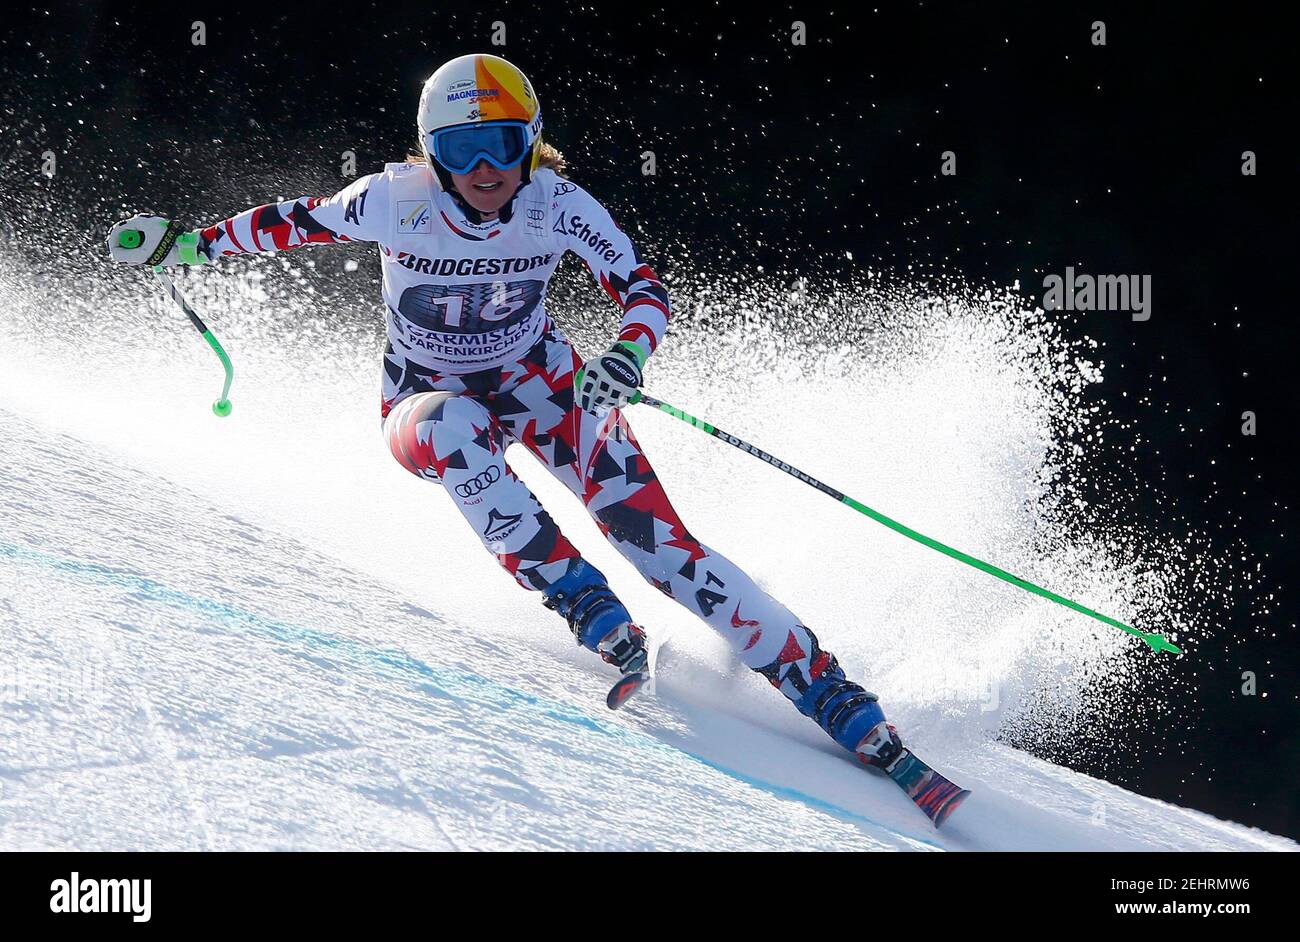 Cornelia Huetter d'Autriche skis pendant la course de ski alpin féminine de la coupe du monde dans la station de ski bavaroise de Garmisch-Partenkirchen, Allemagne, le 6 février 2016. REUTERS/Dominic Ebenbichler photo fournie par action Images Banque D'Images